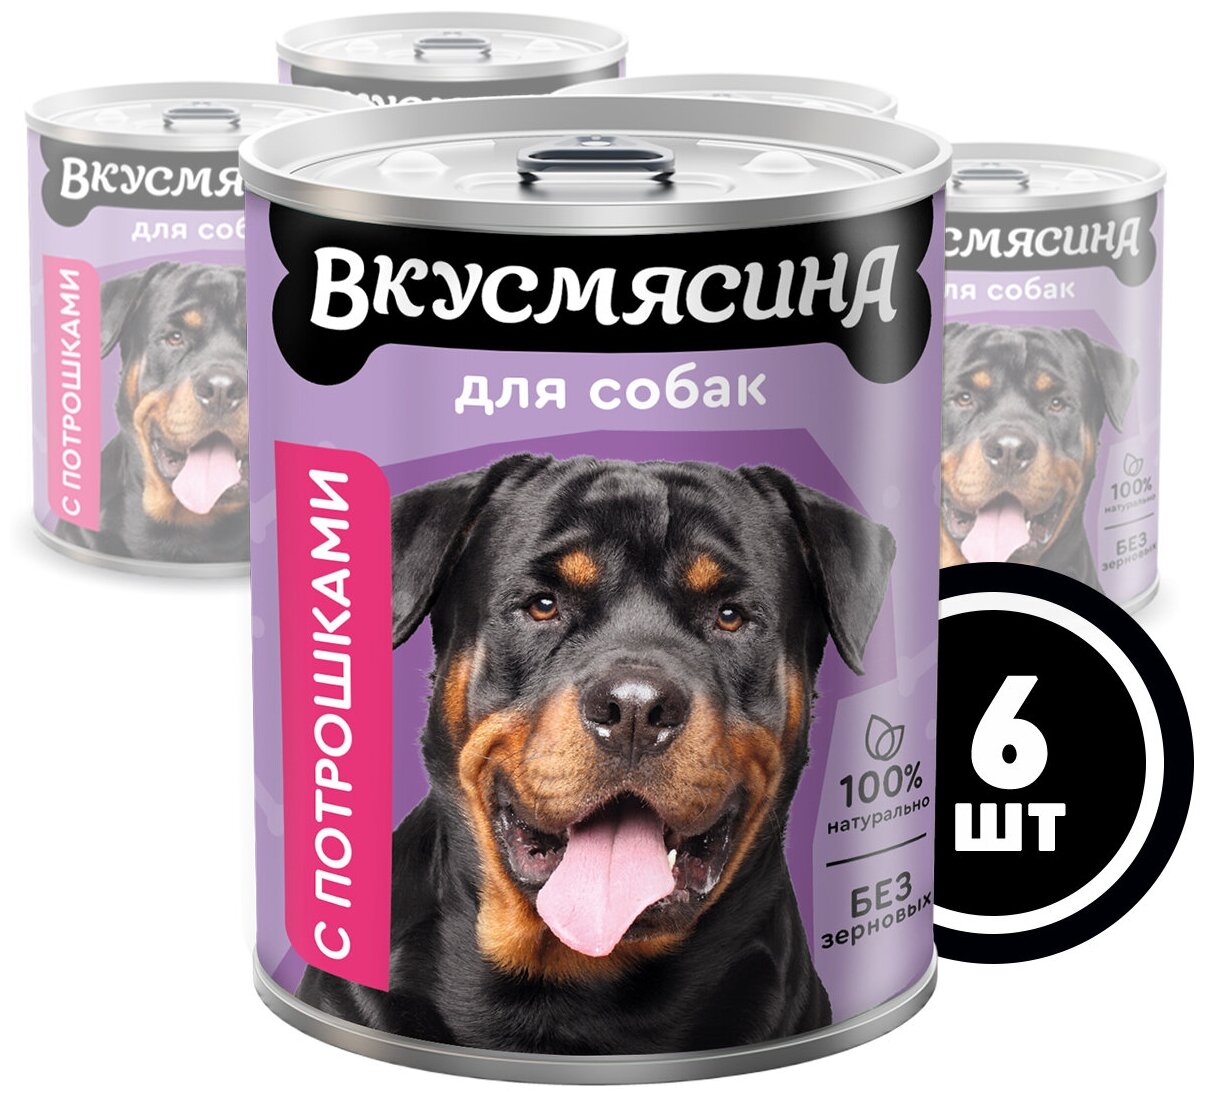 Влажный корм для собак вкусмясина с потрошками, 850 г х 6 шт.